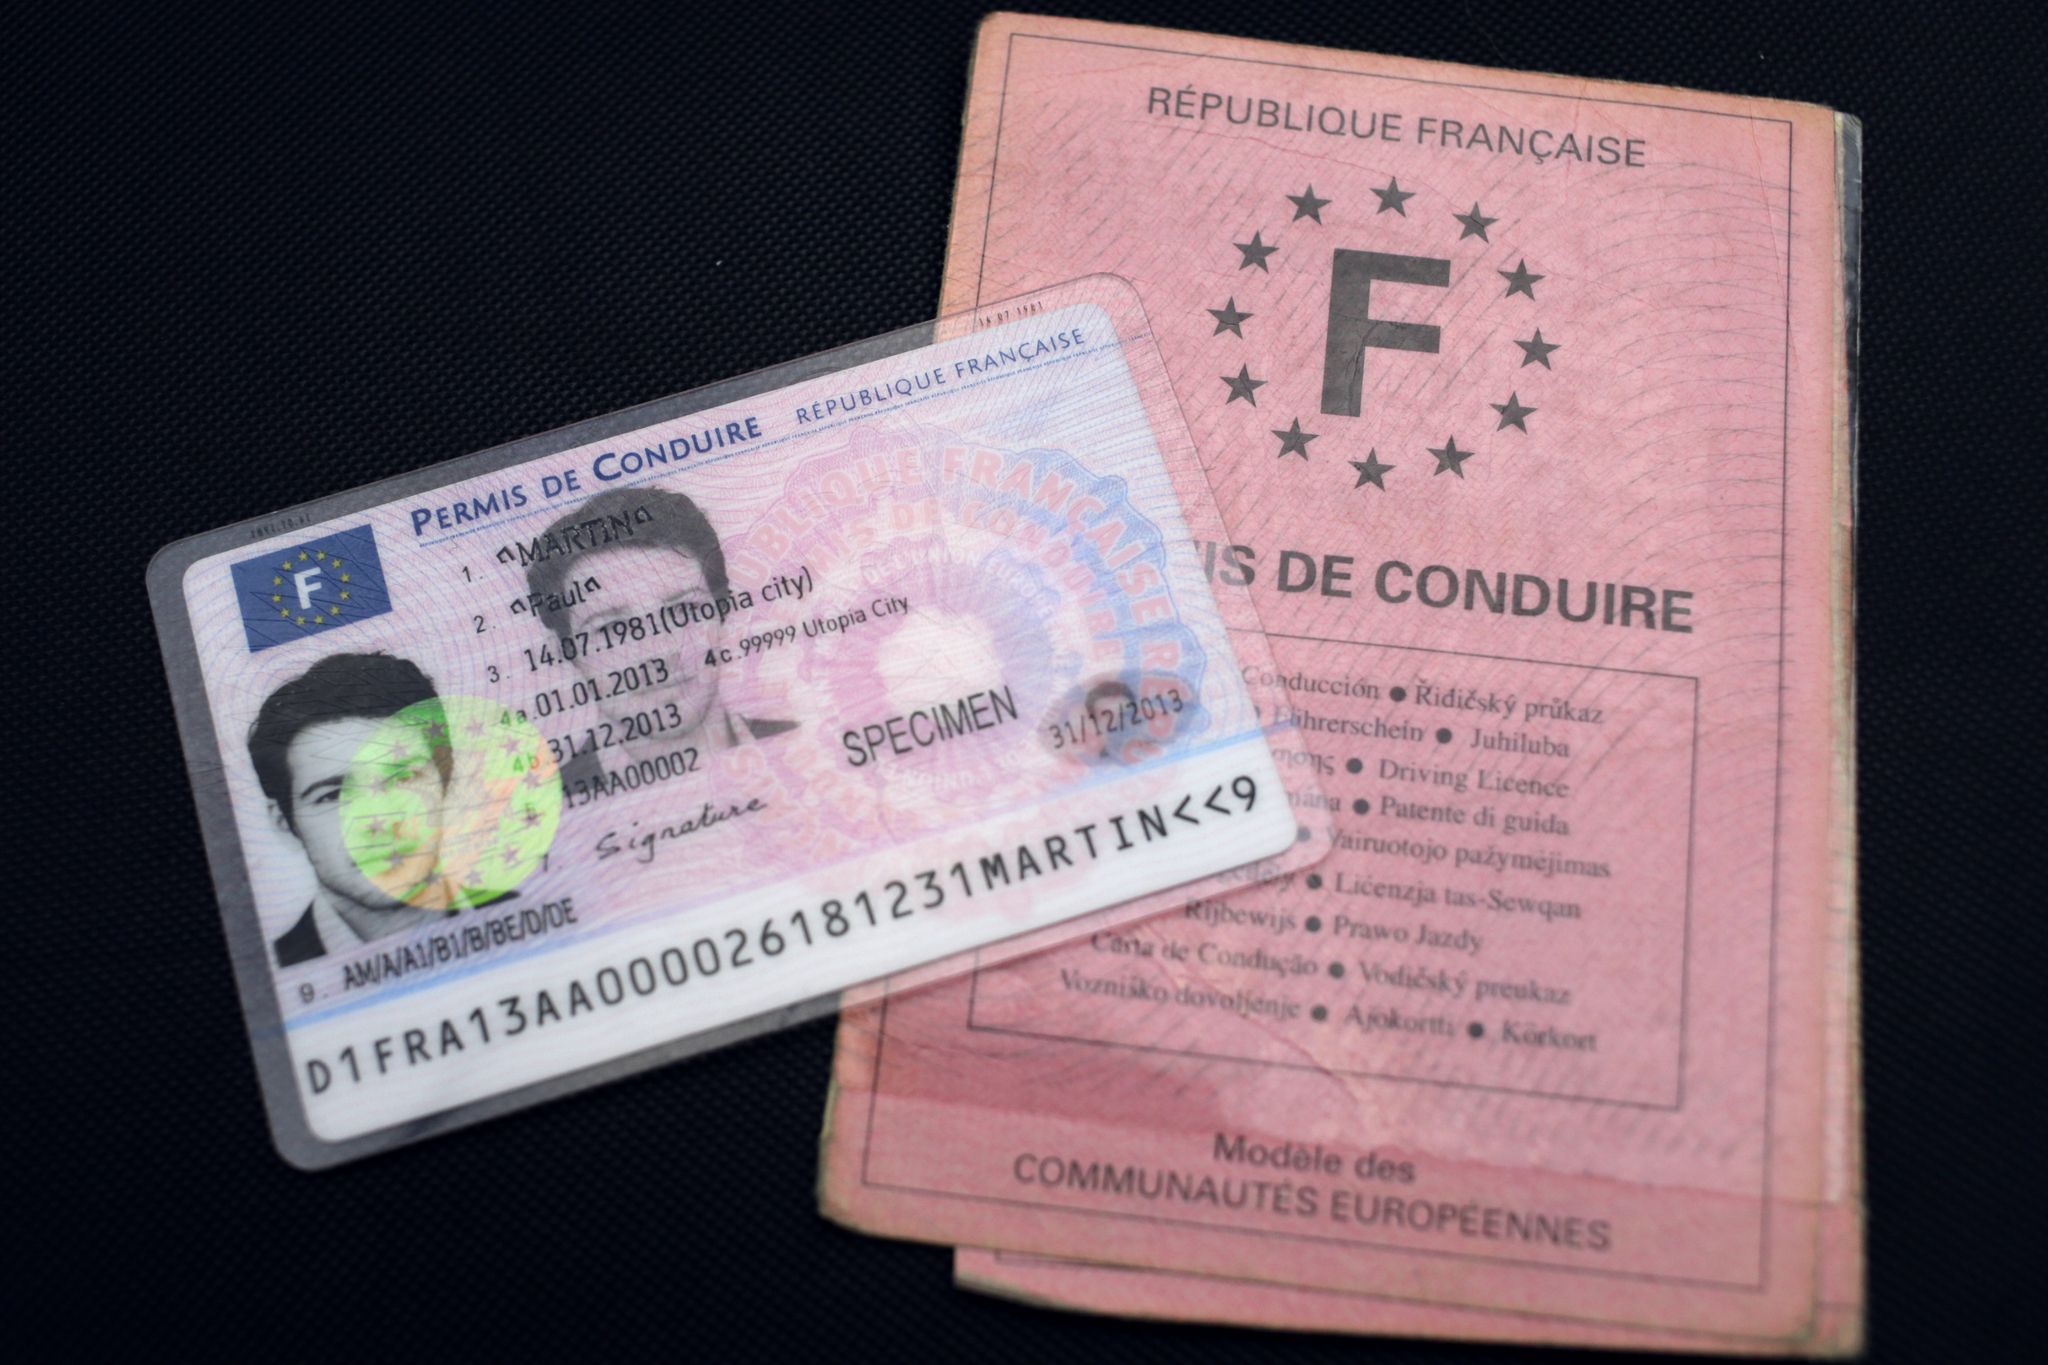 Formations au permis de conduire sur simulateur à Nice